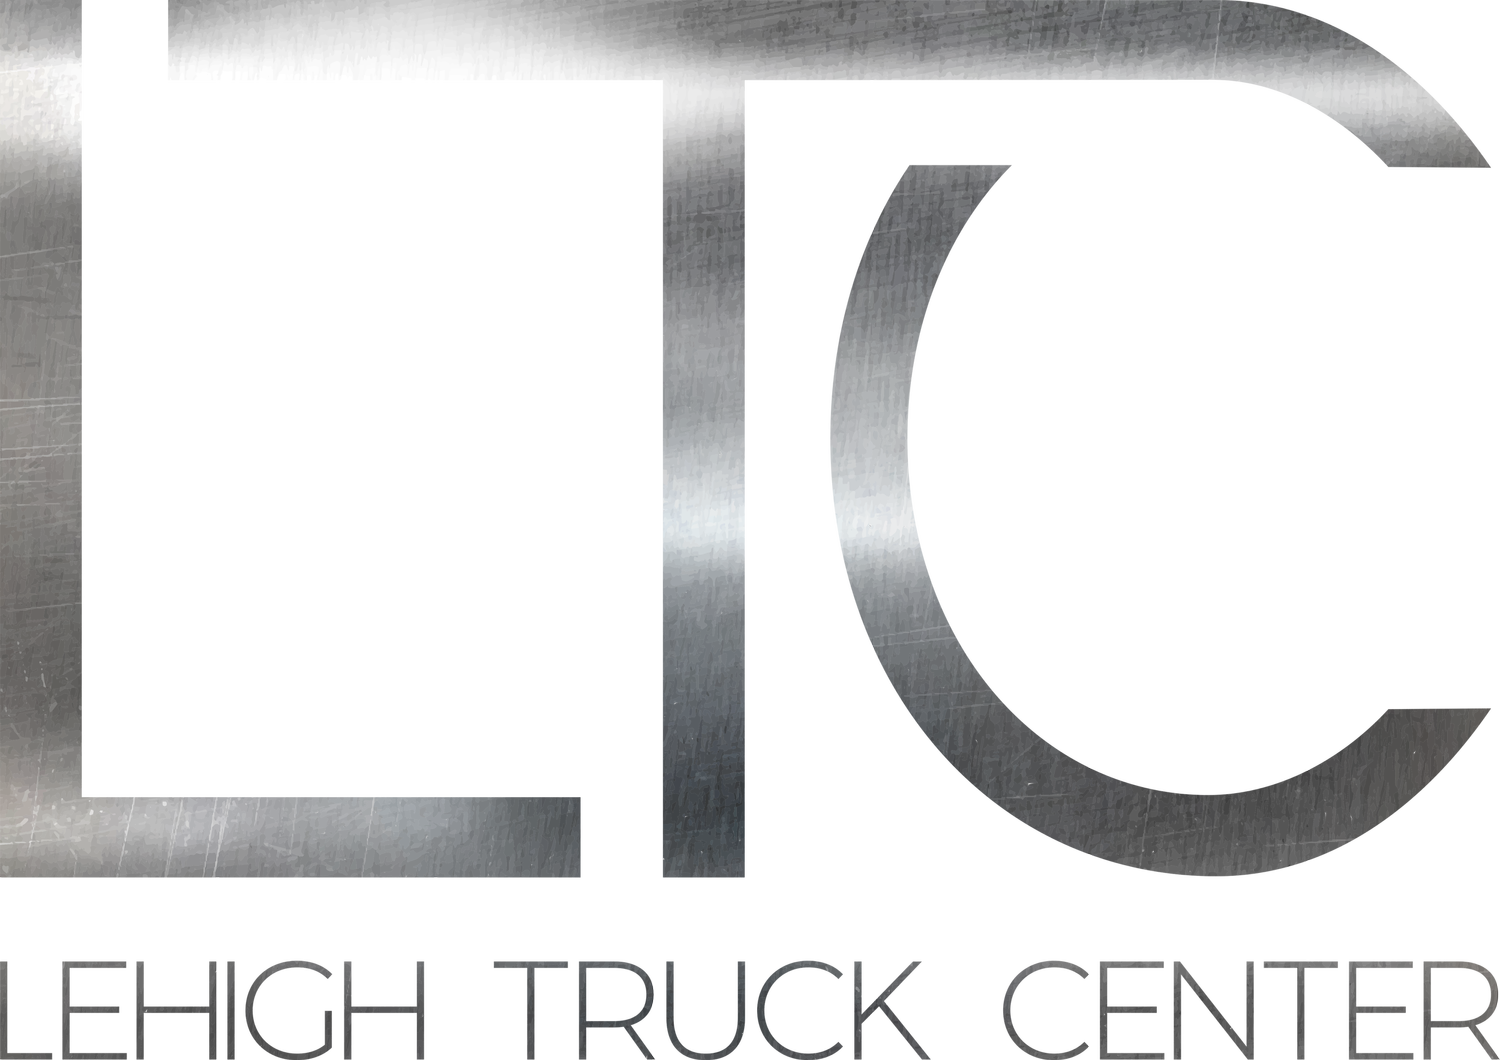 Lehigh Truck Center